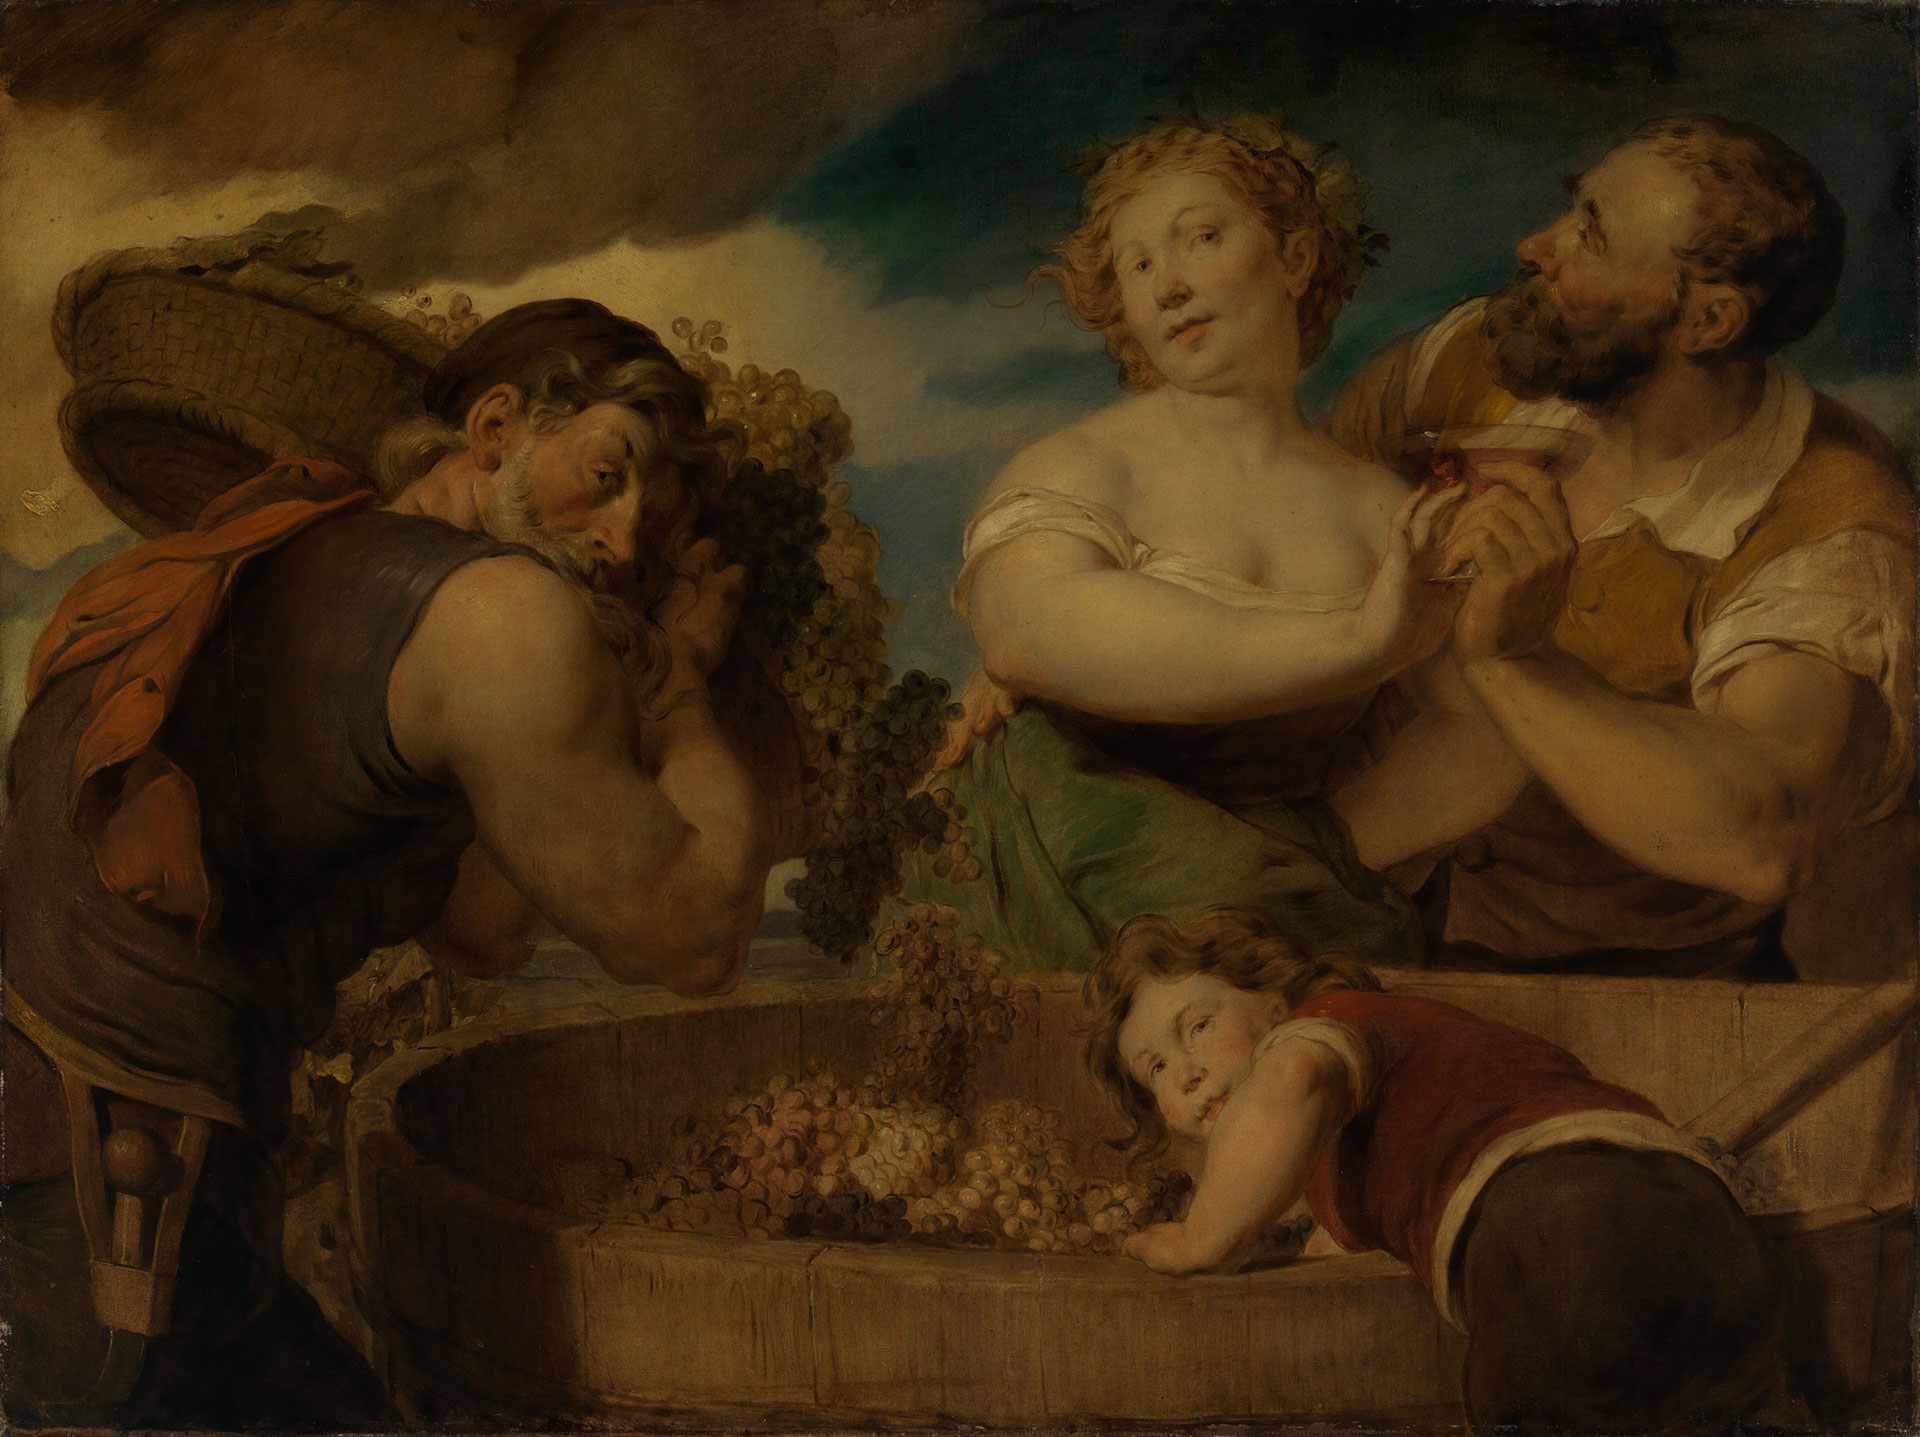 Abbildung des Werks "Weinlese" von Hans Canon. Um ein Fass mit Weintrauben stehen zwei Männer, ein Kind und eine Frau. Ein Mann umarmt die Frau, der andere Mann trägt einen Korb und das Kind greift in das Fass. 